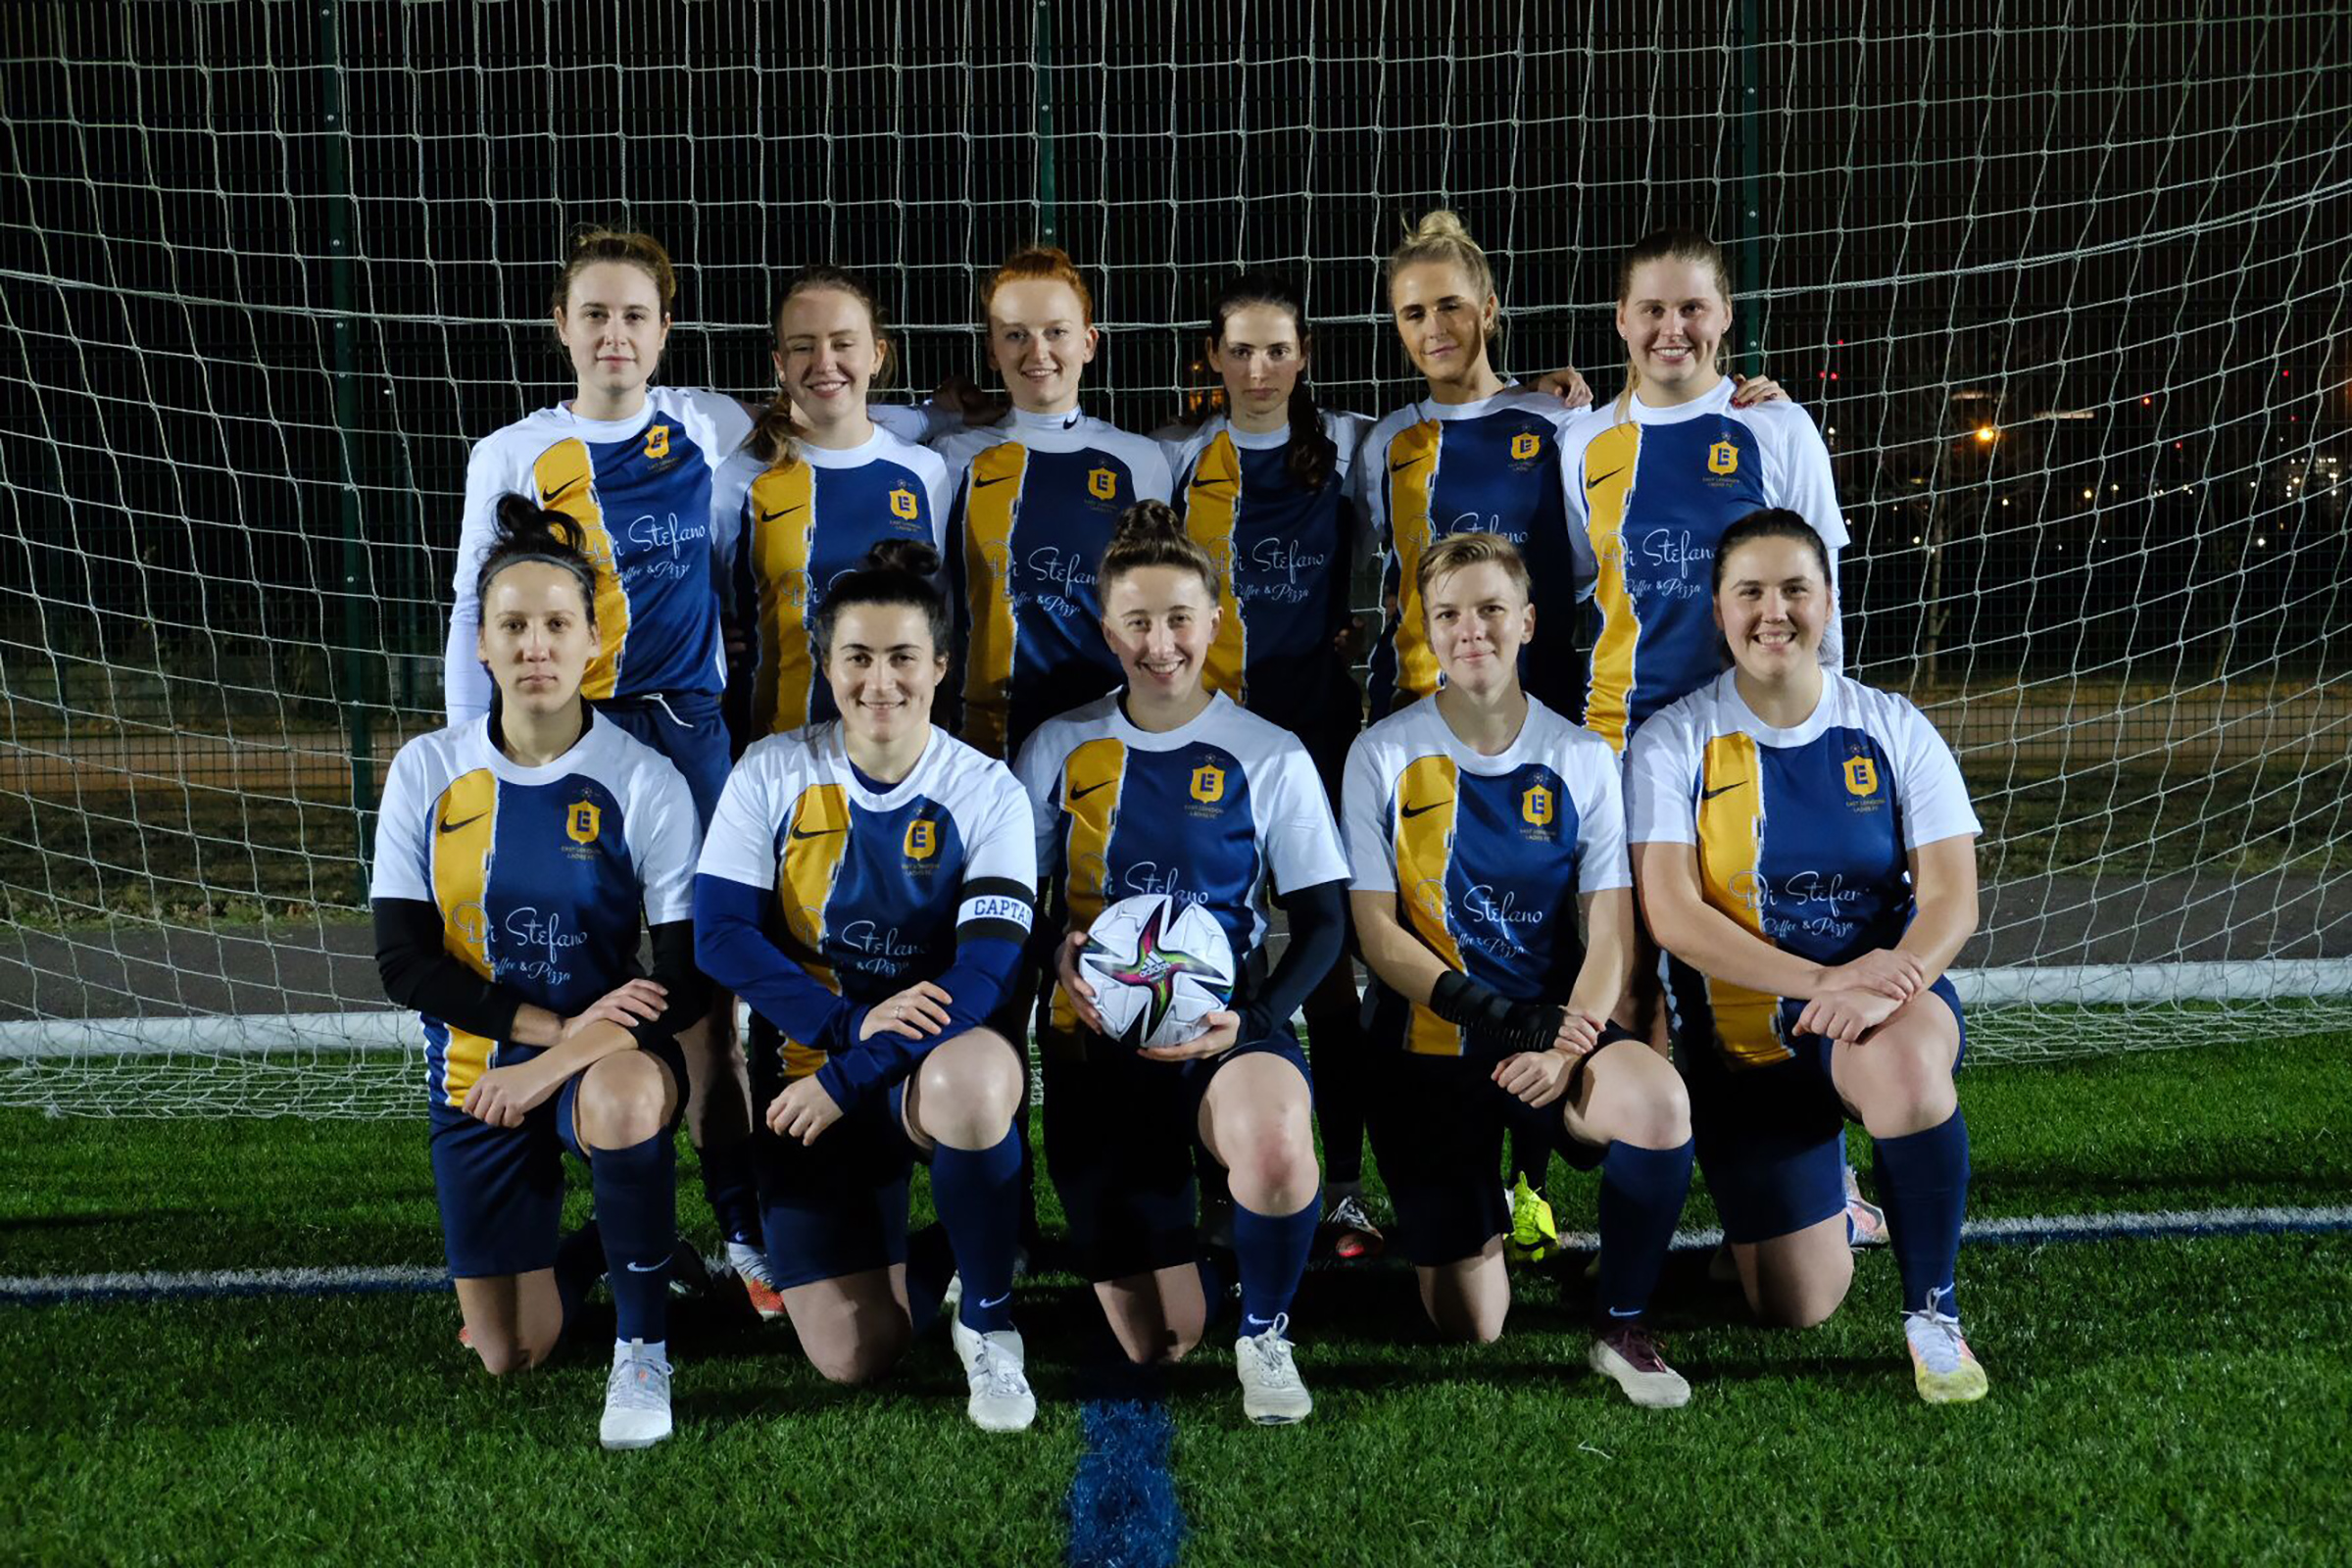 East London Ladies Football Team